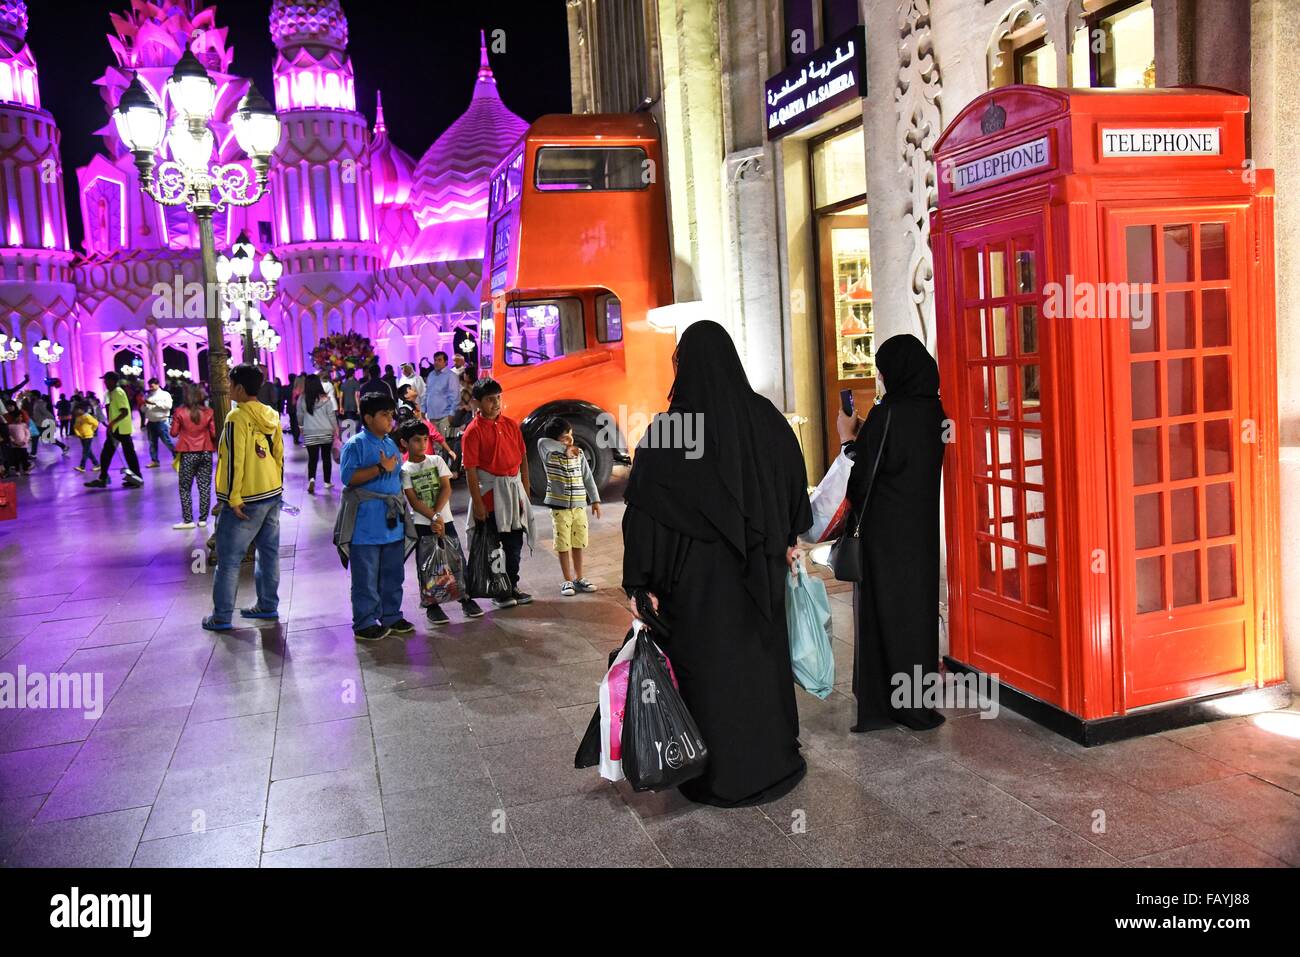 Global Village Dubailand, DUBAÏ, ÉMIRATS ARABES UNIS a déclaré qu'il était le plus grand tourisme, loisirs et culture projet. Banque D'Images